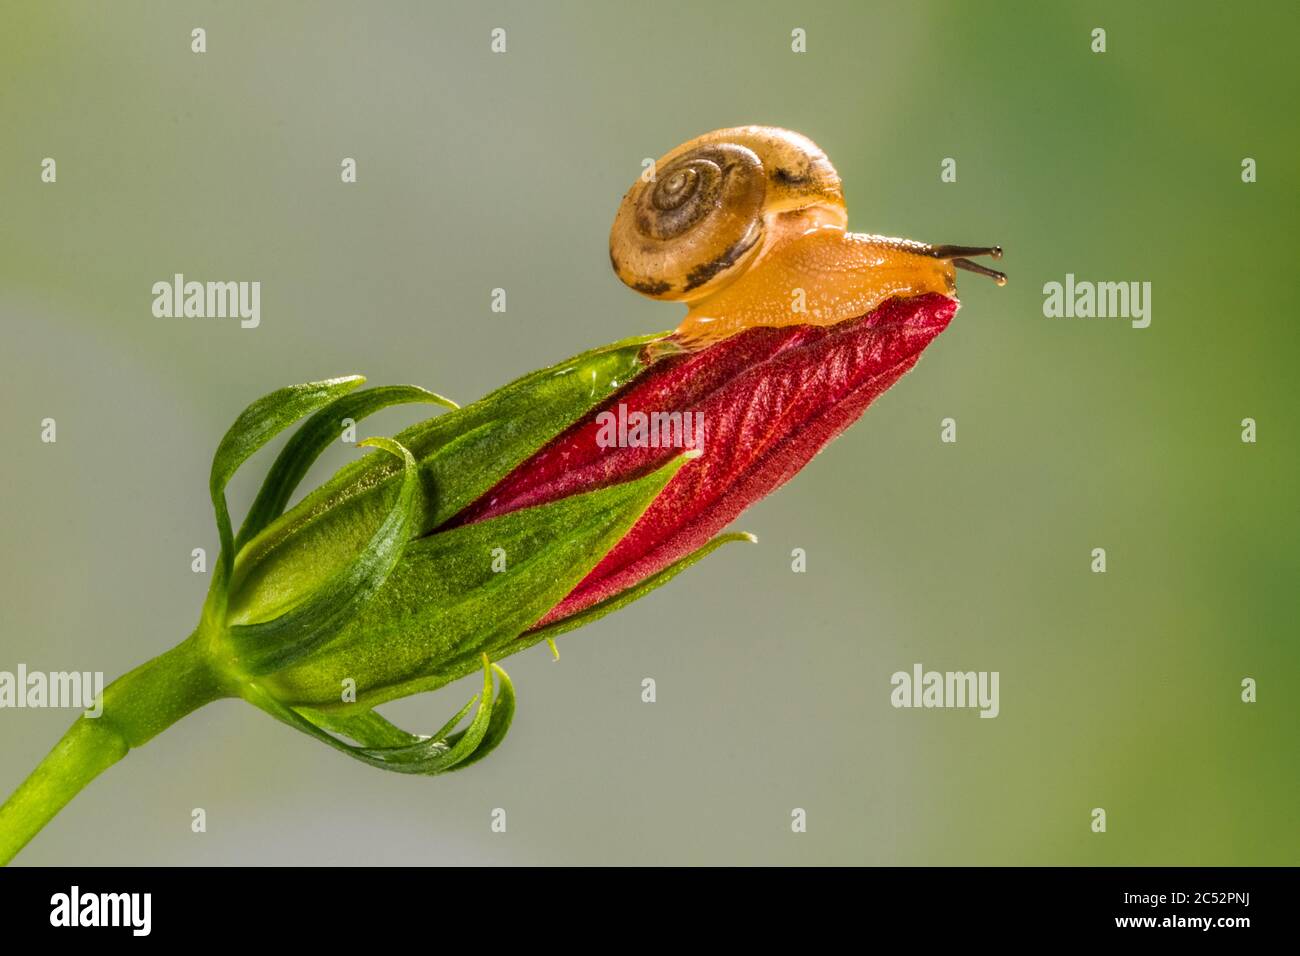 Gros plan d'un escargot sur une fleur, Indonésie Banque D'Images